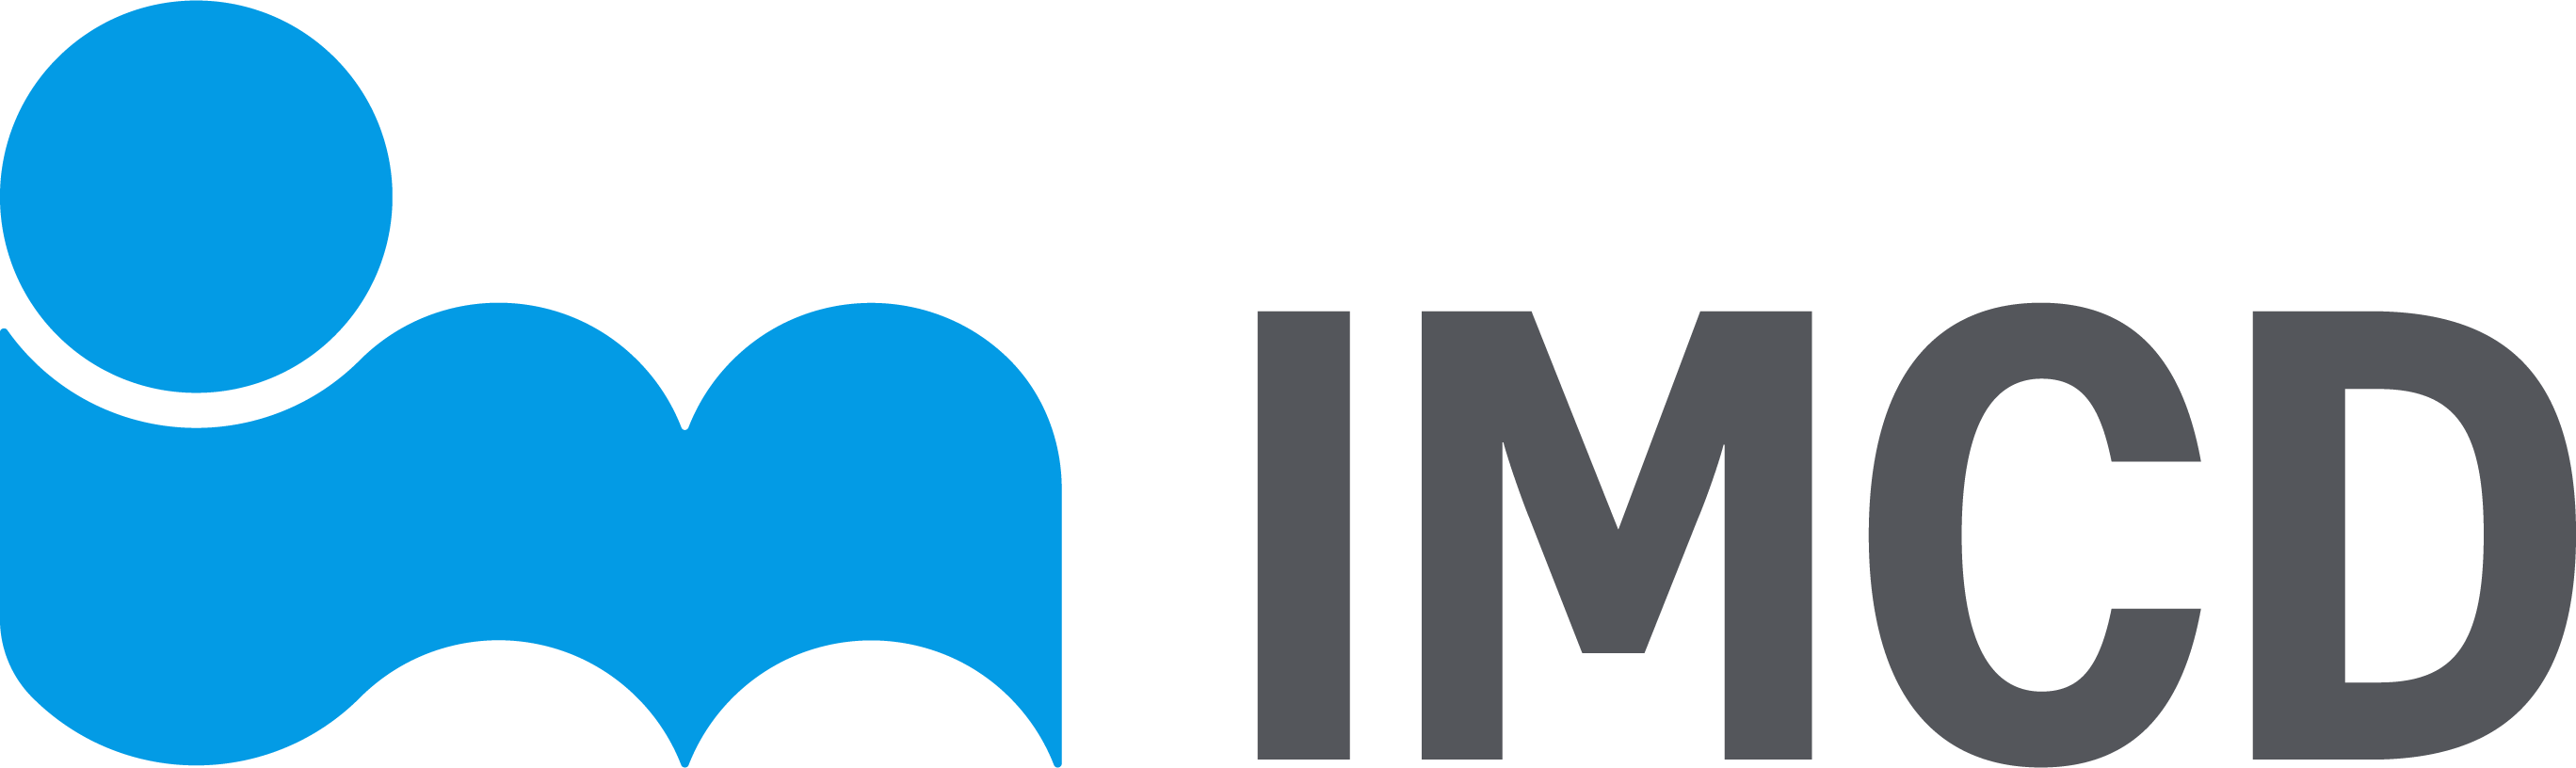 IMCD Group